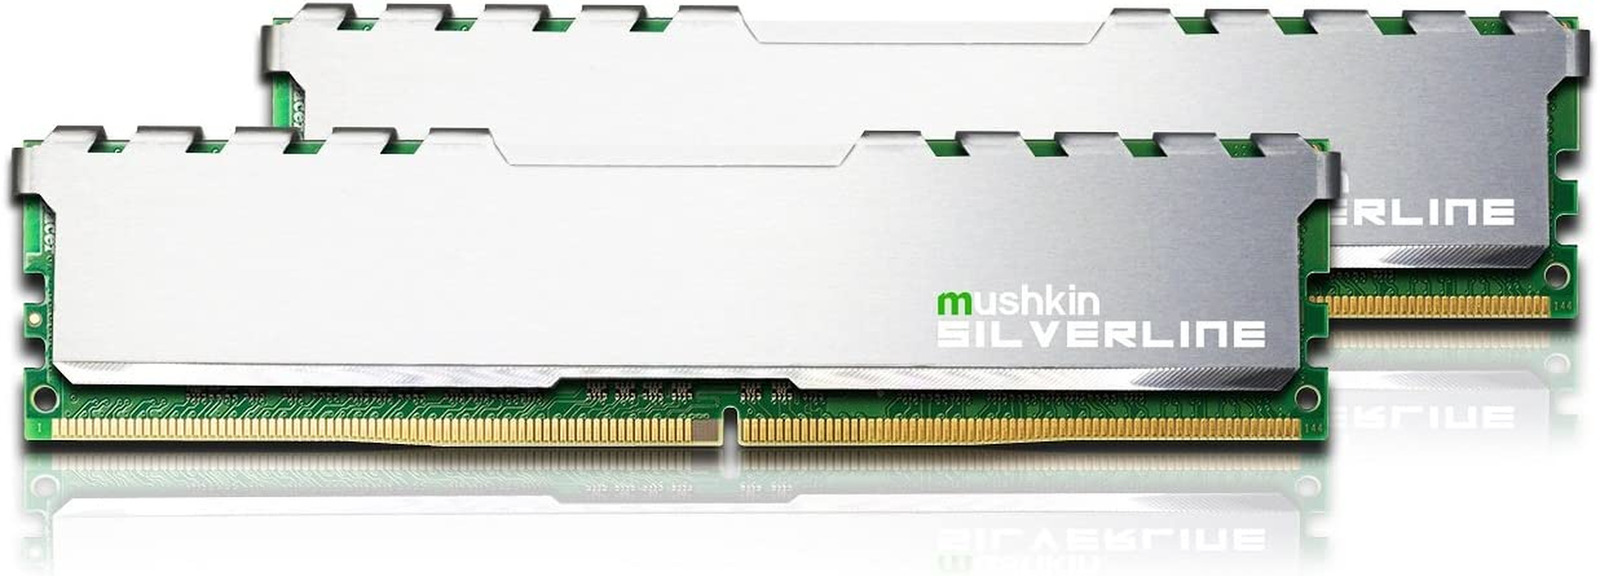 Mushkin SILVERLINE Series – DDR4 Desktop DRAM – 32GB (2X16Gb) Memory Kit DIMM – 